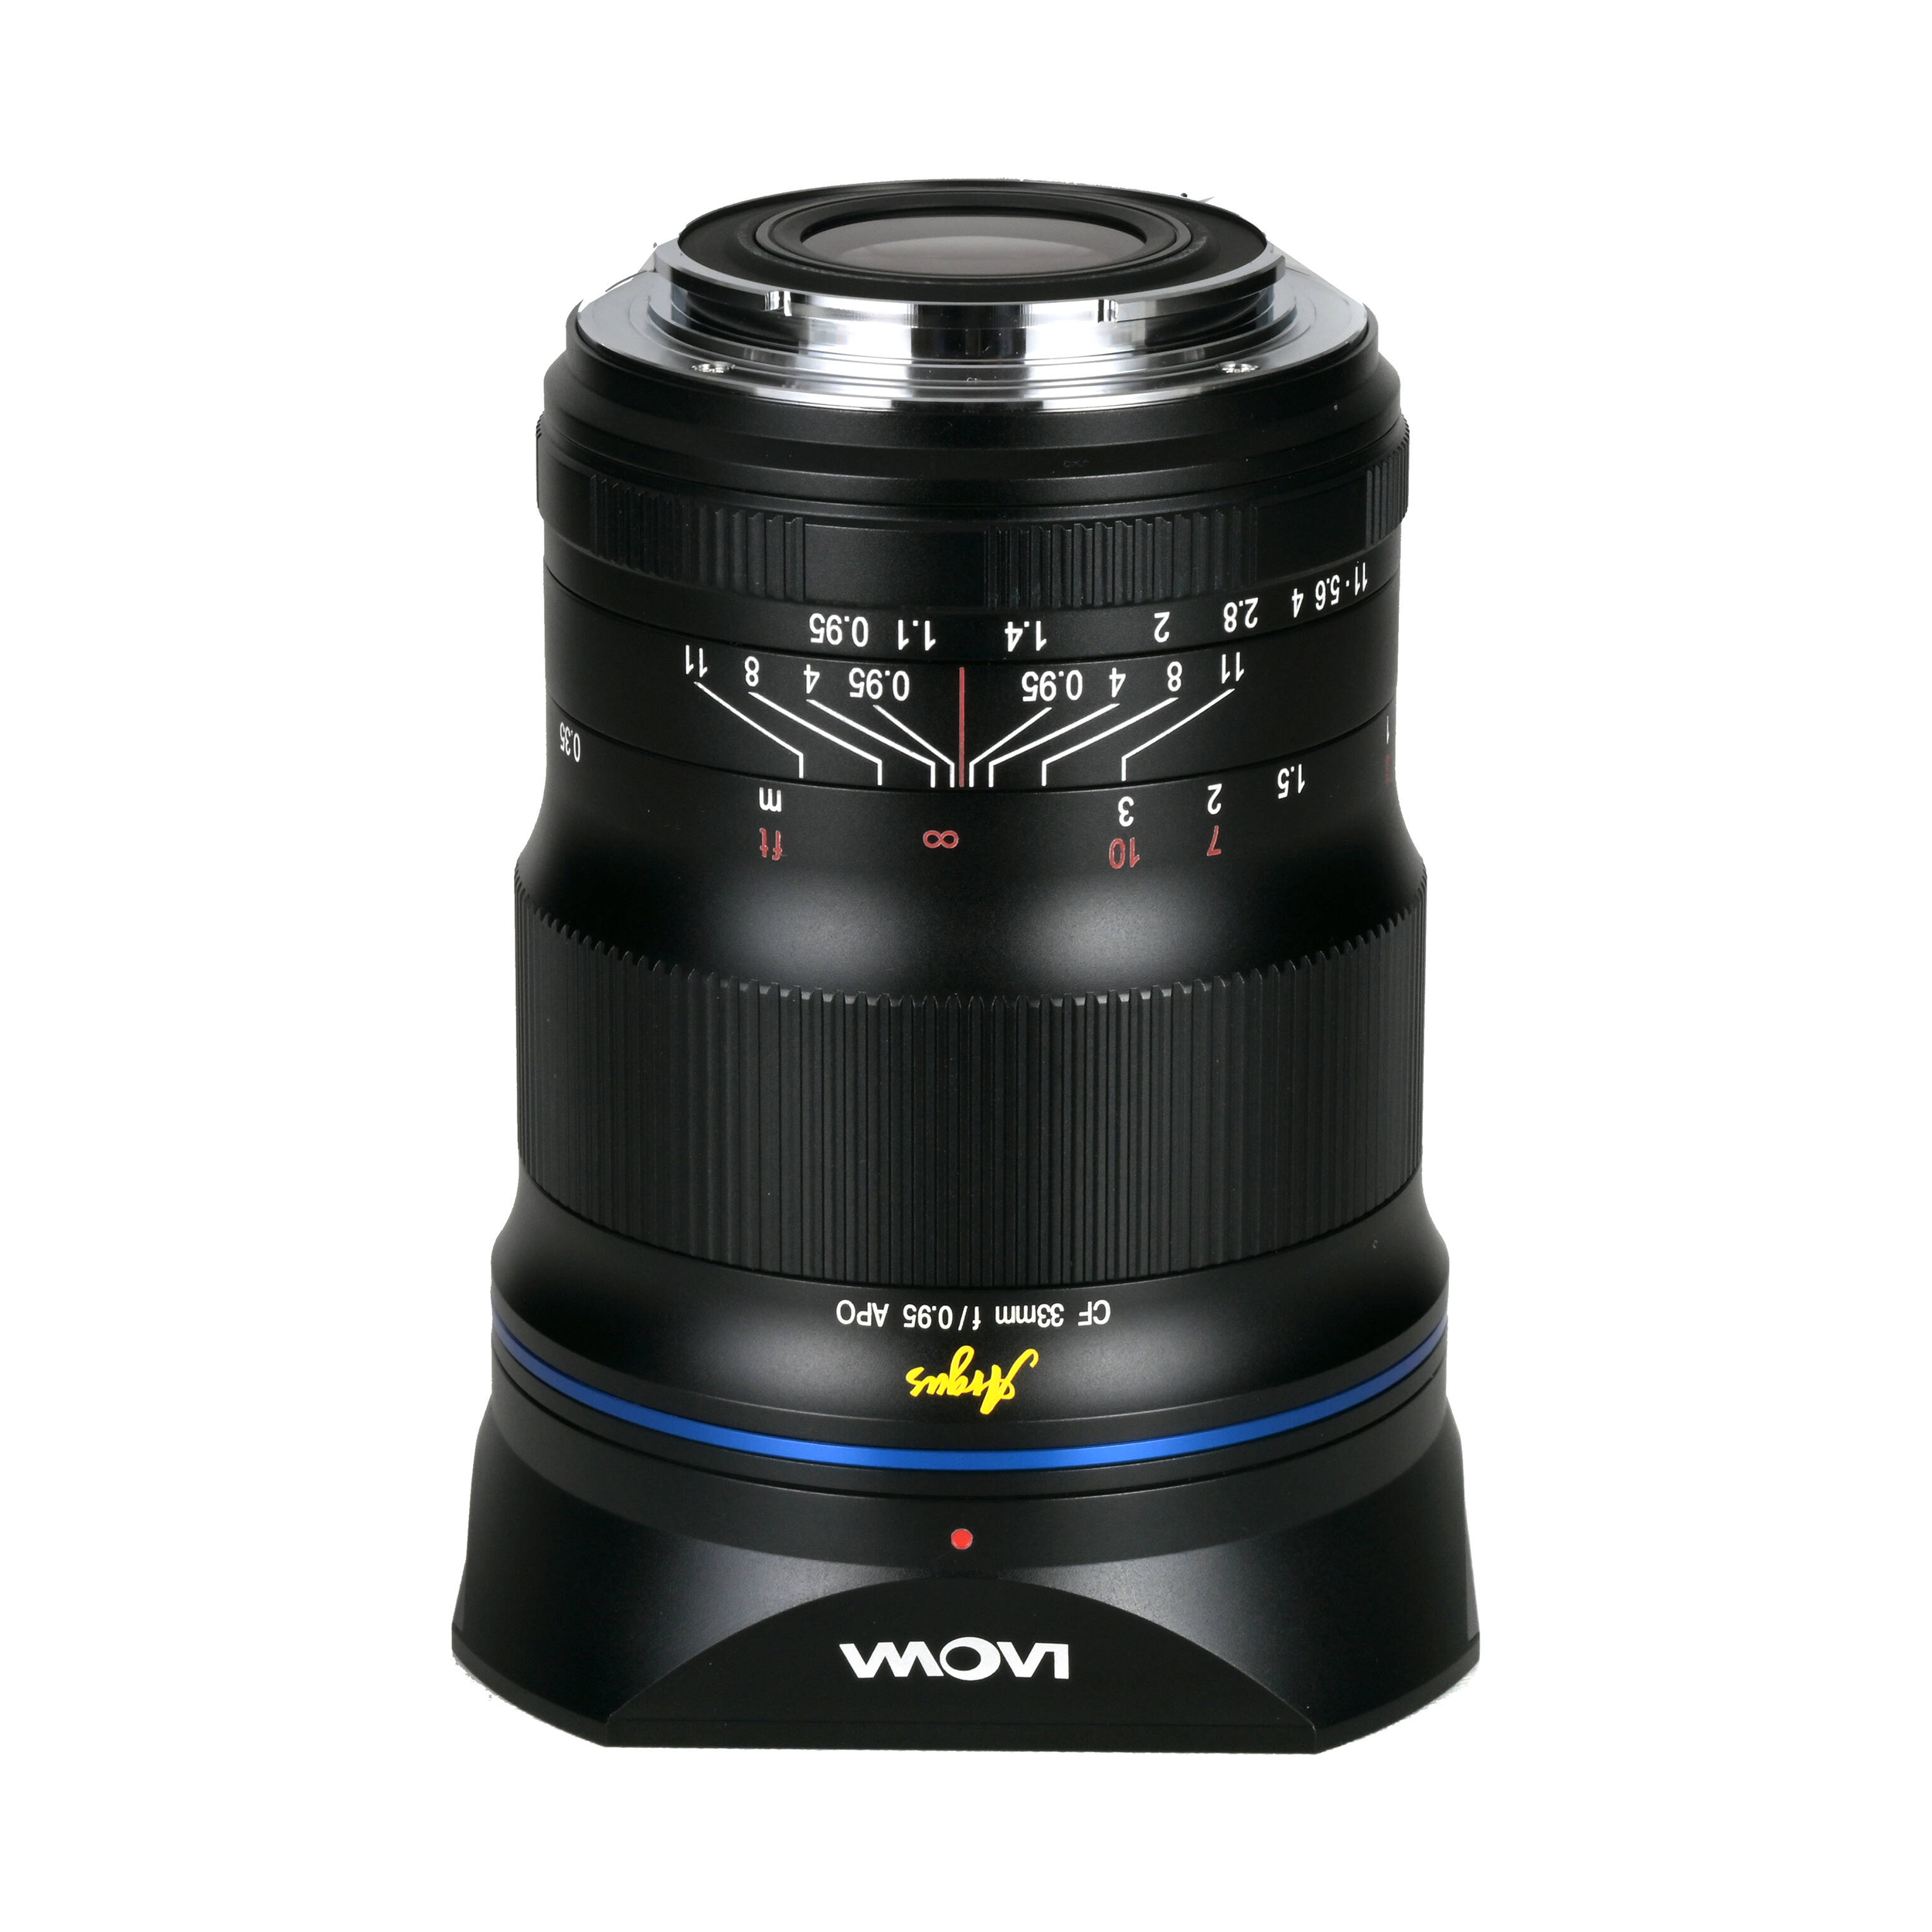 Laowa Venus Optics Argus 33 mm f / 0,95 CF APO Lens for Sony E Mount